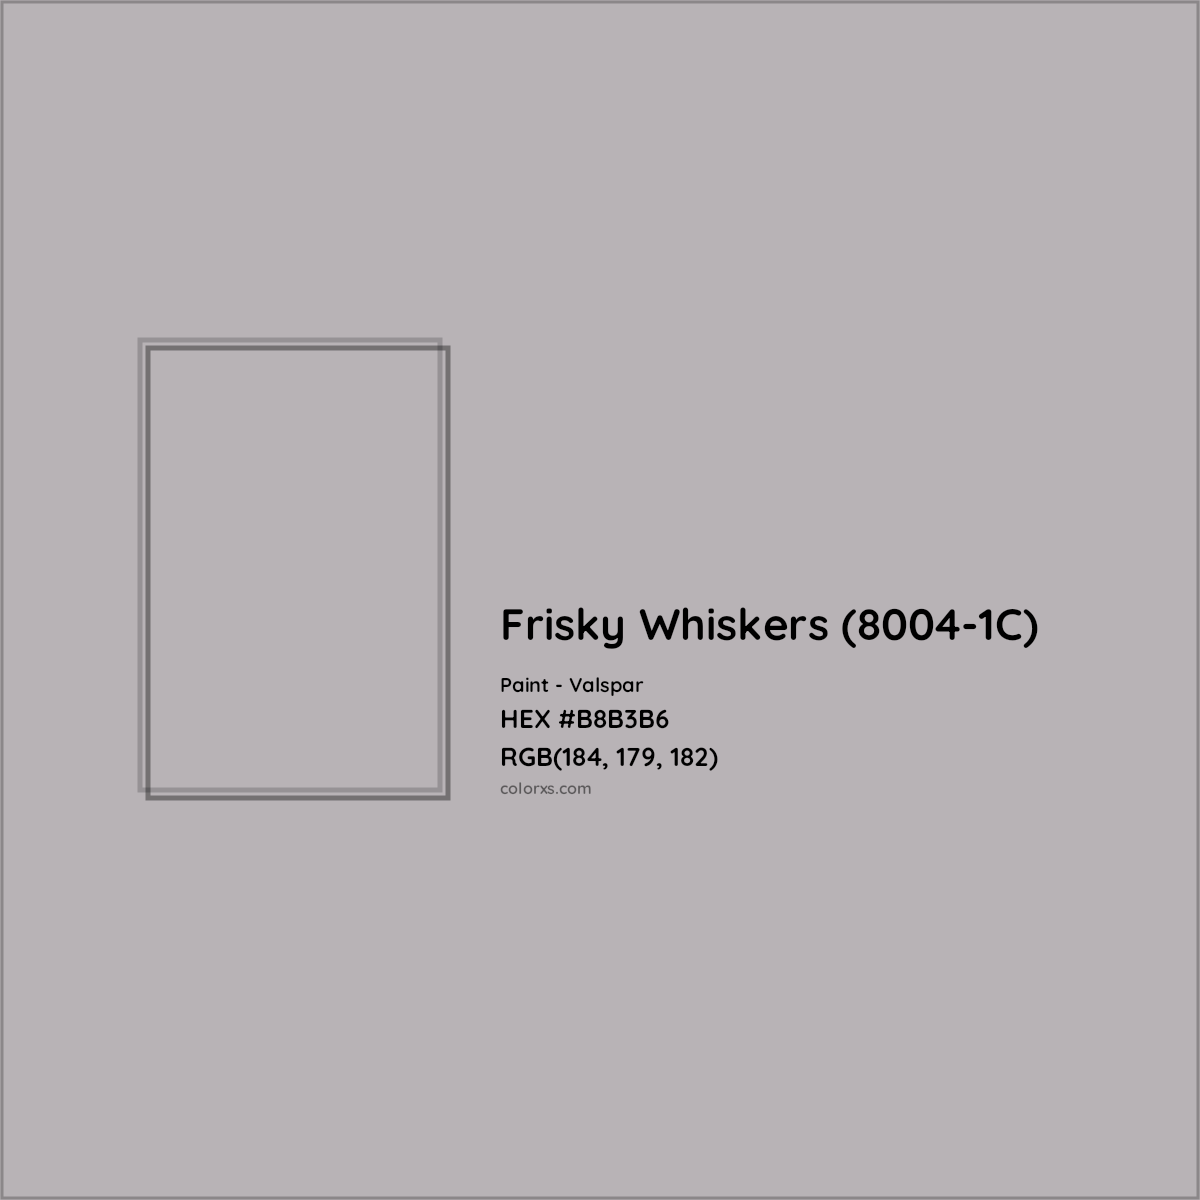 HEX #B8B3B6 Frisky Whiskers (8004-1C) Paint Valspar - Color Code